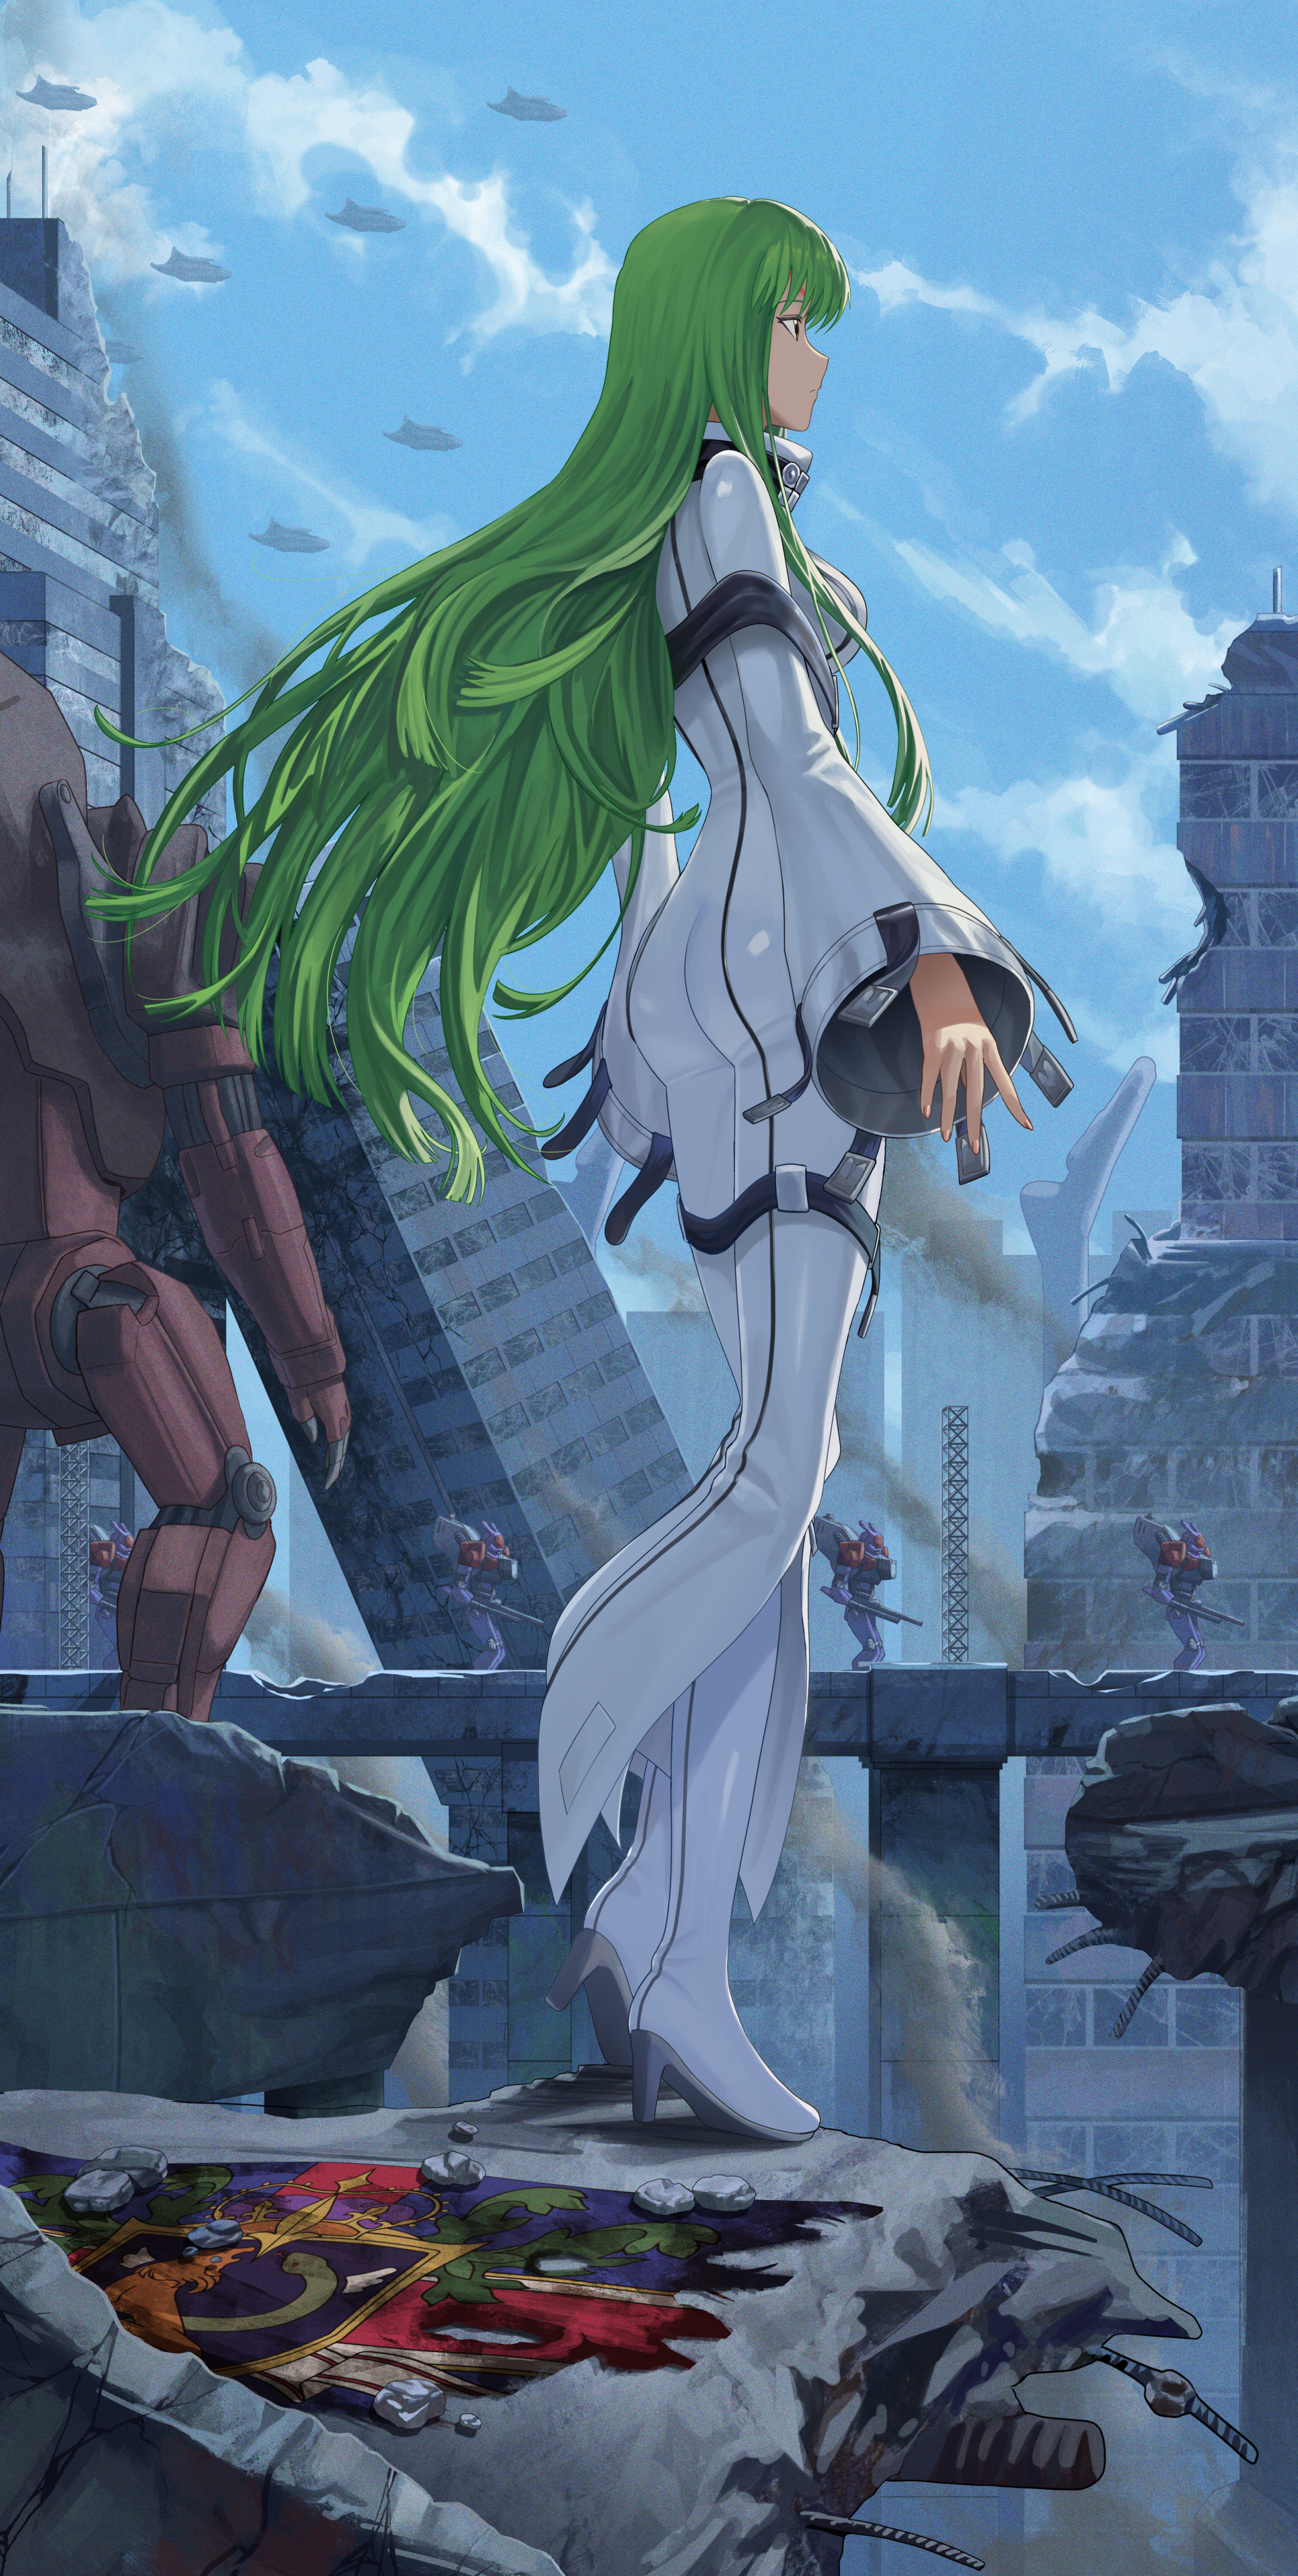 Anime Anime Girls Code Geass C C Code Geass Long Hair Green Hair Solo Artwork Digital Art Fan Art 1930x3830